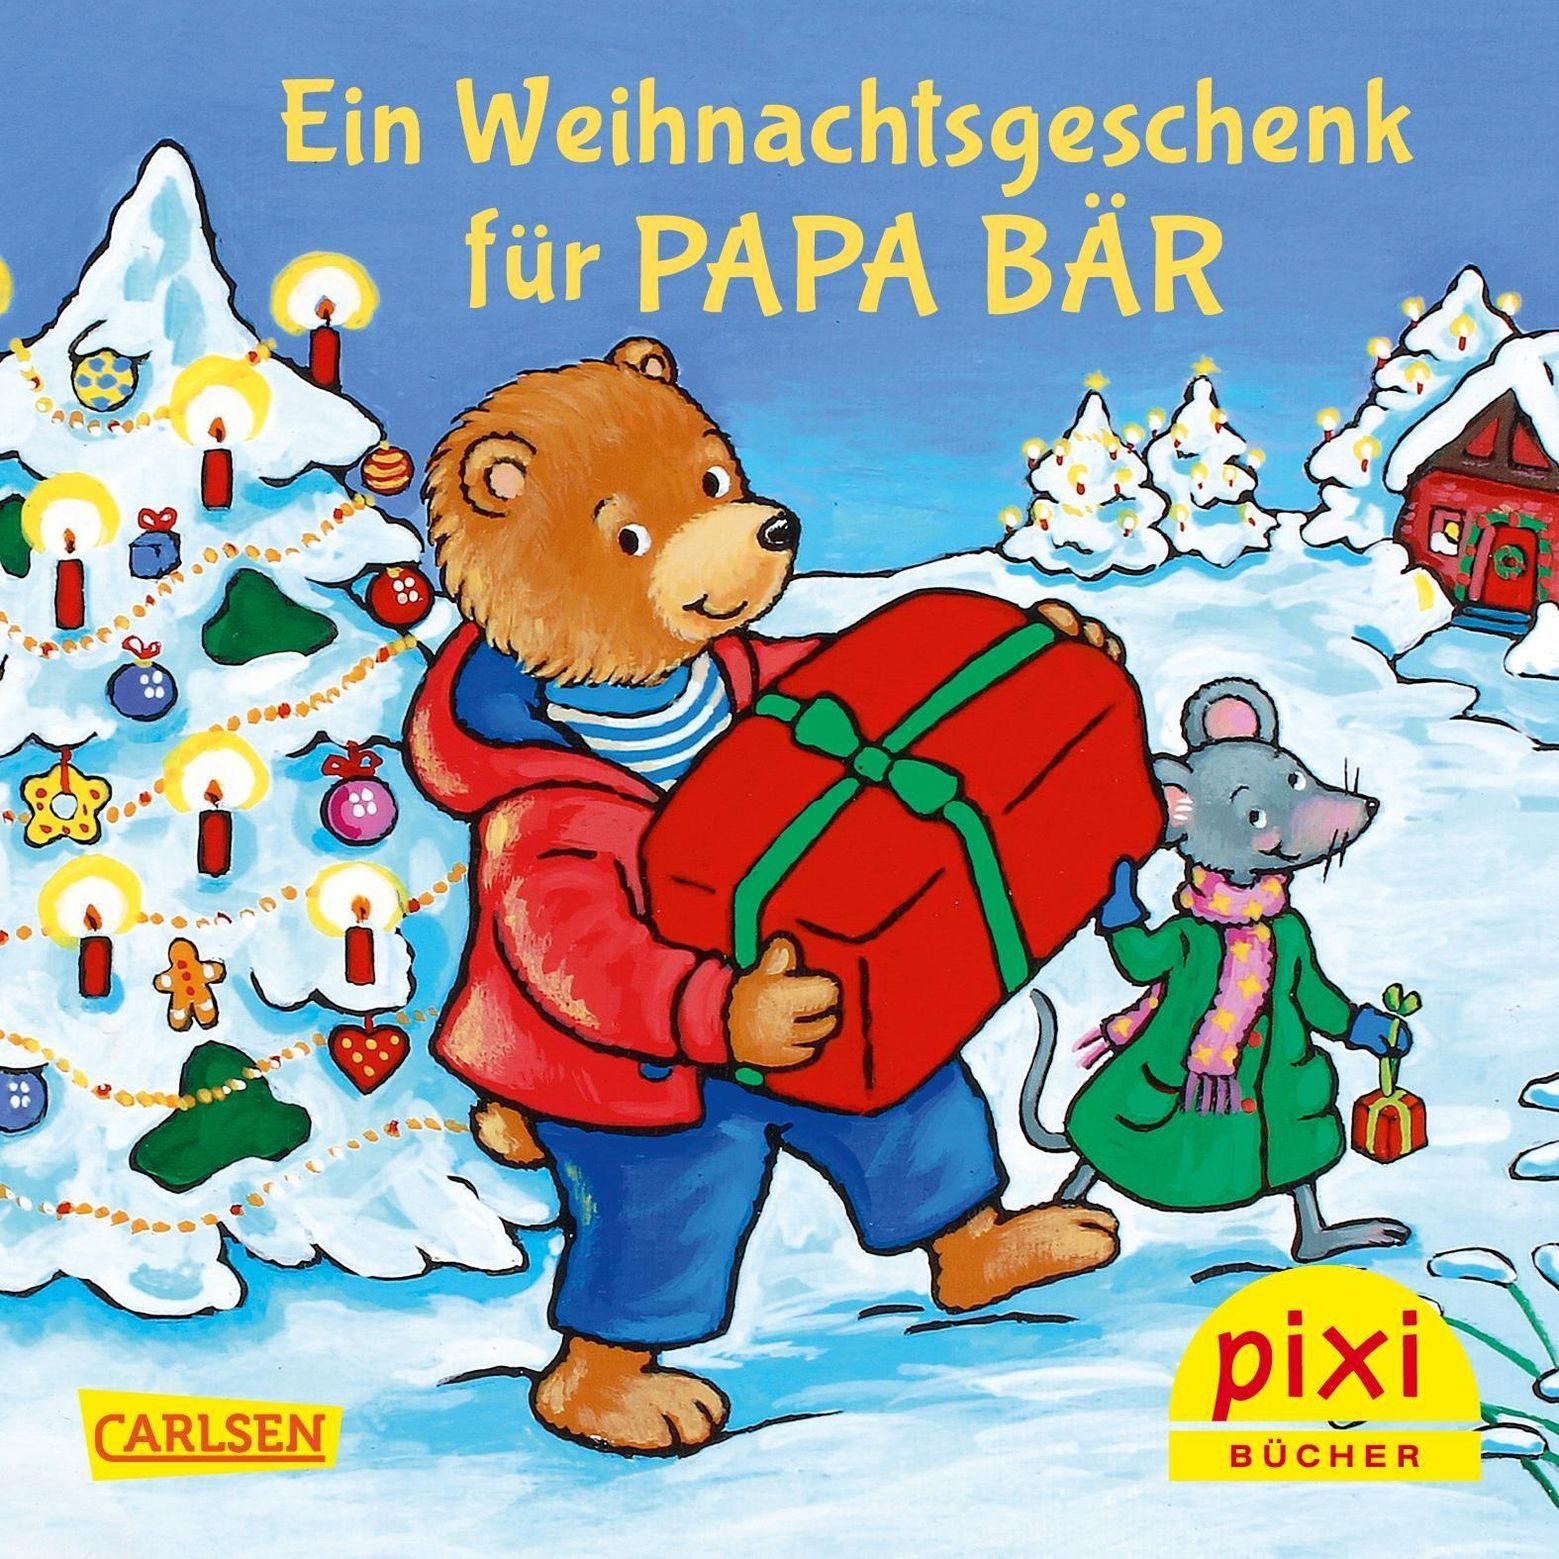 Pixi Bücher: Pixi Adventskalender in Weihnachtsbaumform 2019, 24 Teile Buch  jetzt online bei Weltbild.de bestellen